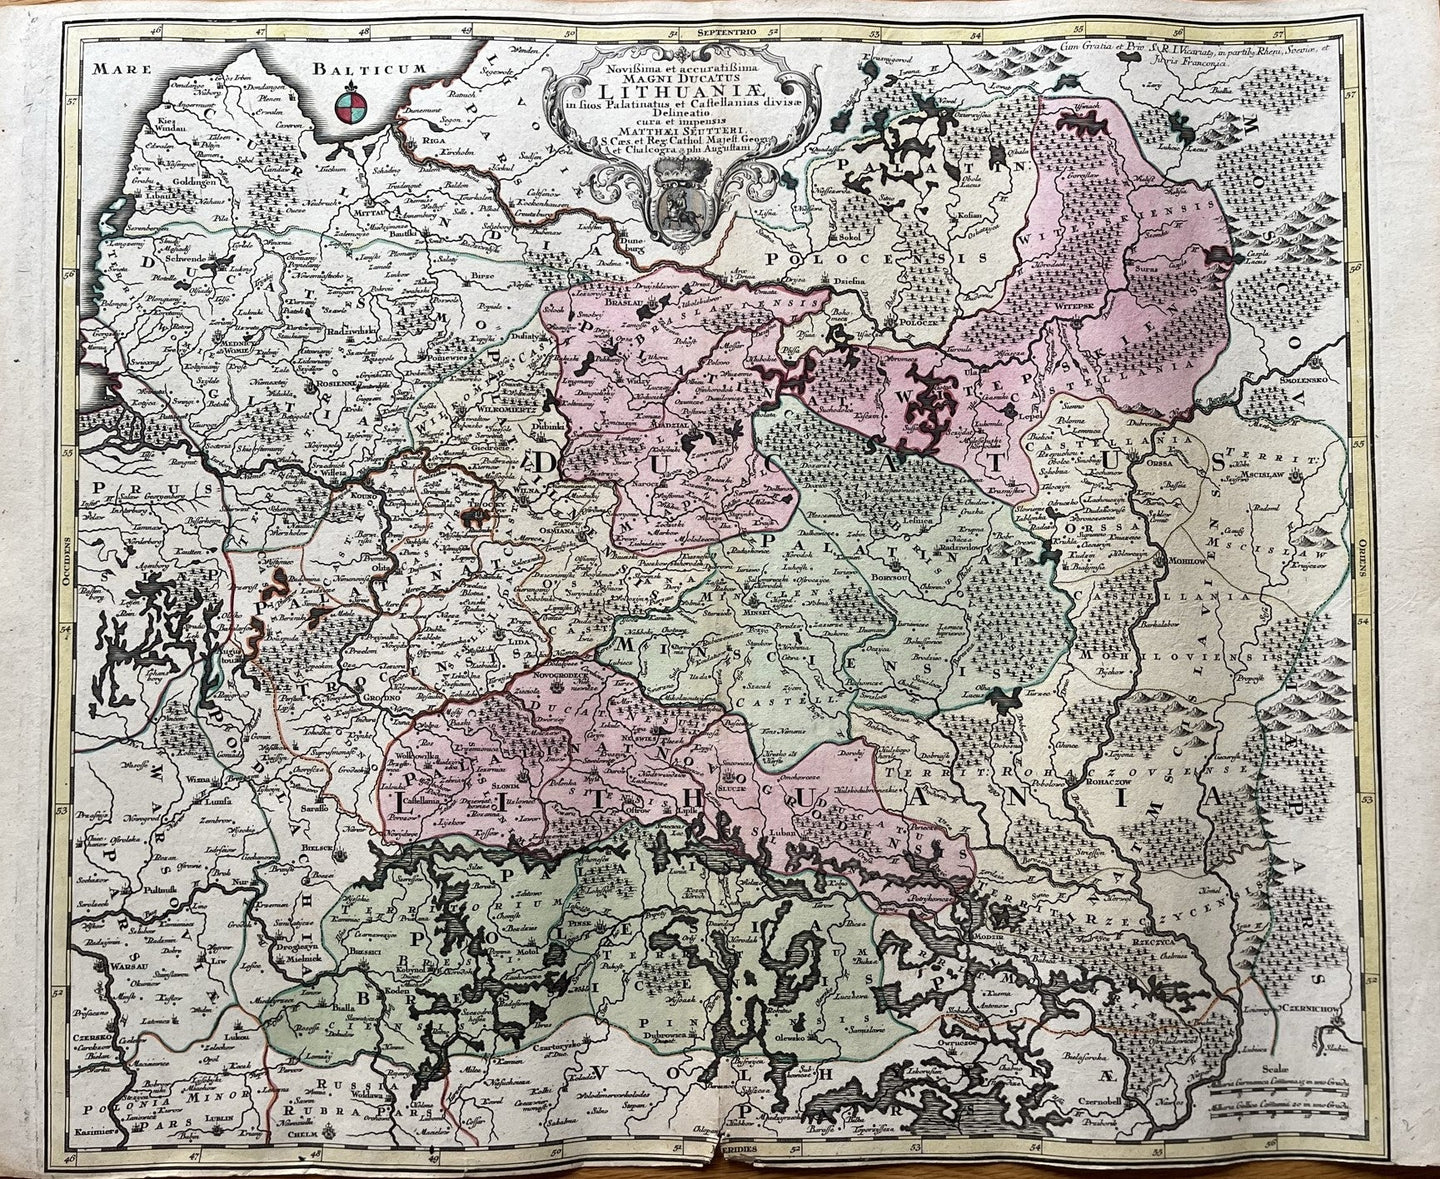 Genuine-Antique-Hand-colored-Map-Poland-Russia-Novisima-et-accuratissima-Magni-Ducatus-Lithuaniae-in-suos-Palatinatus-et-et-Causiellanias-divisae-Delinatio-cura-et-impensis---Seutter-Maps-Of-Antiquity